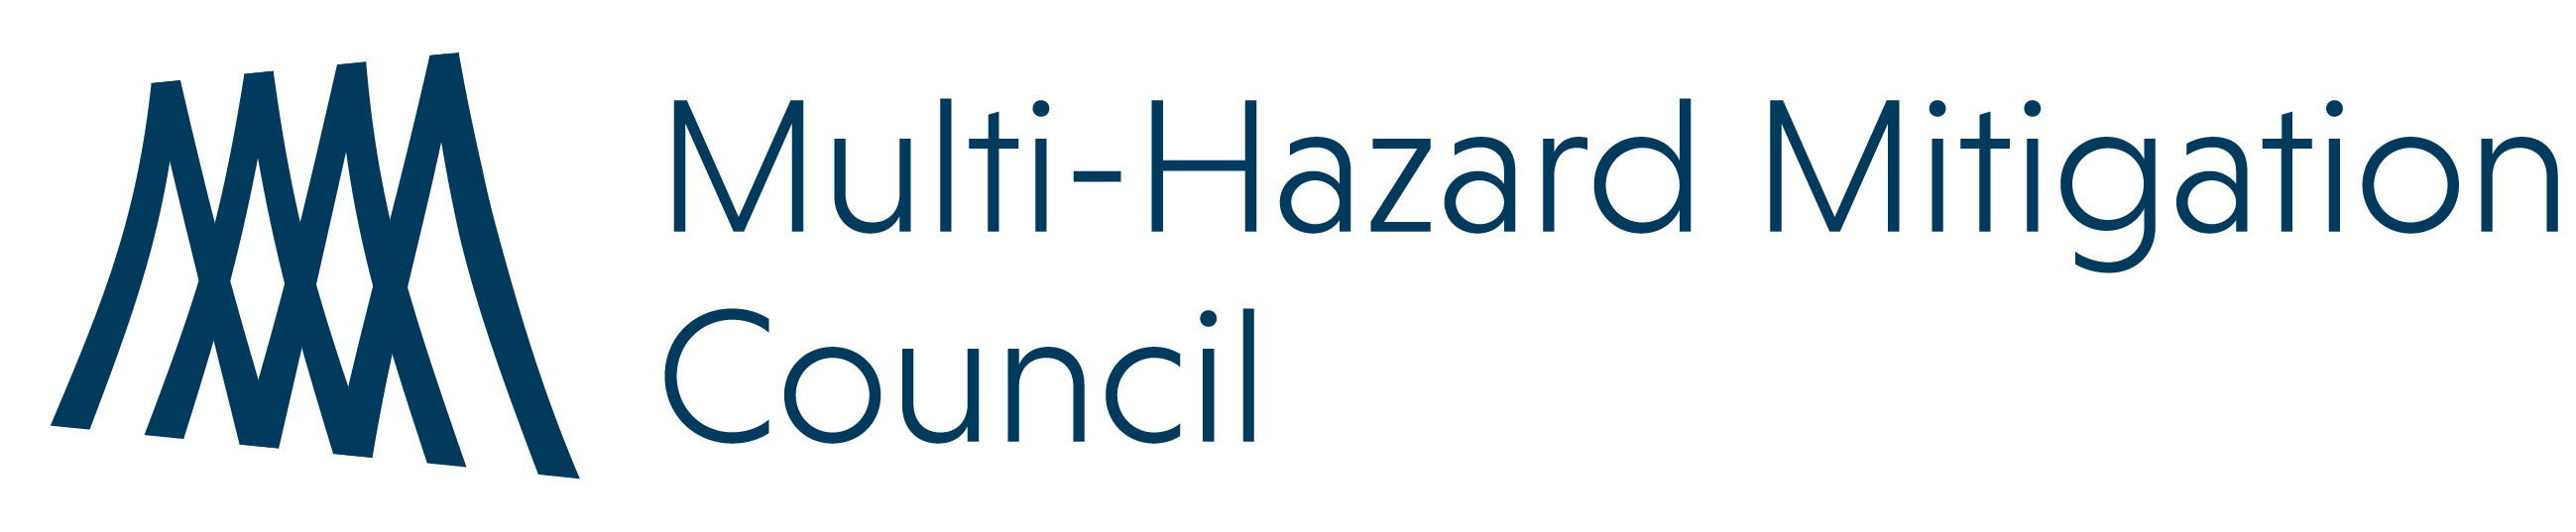 Multi-Hazard Mitigation Council